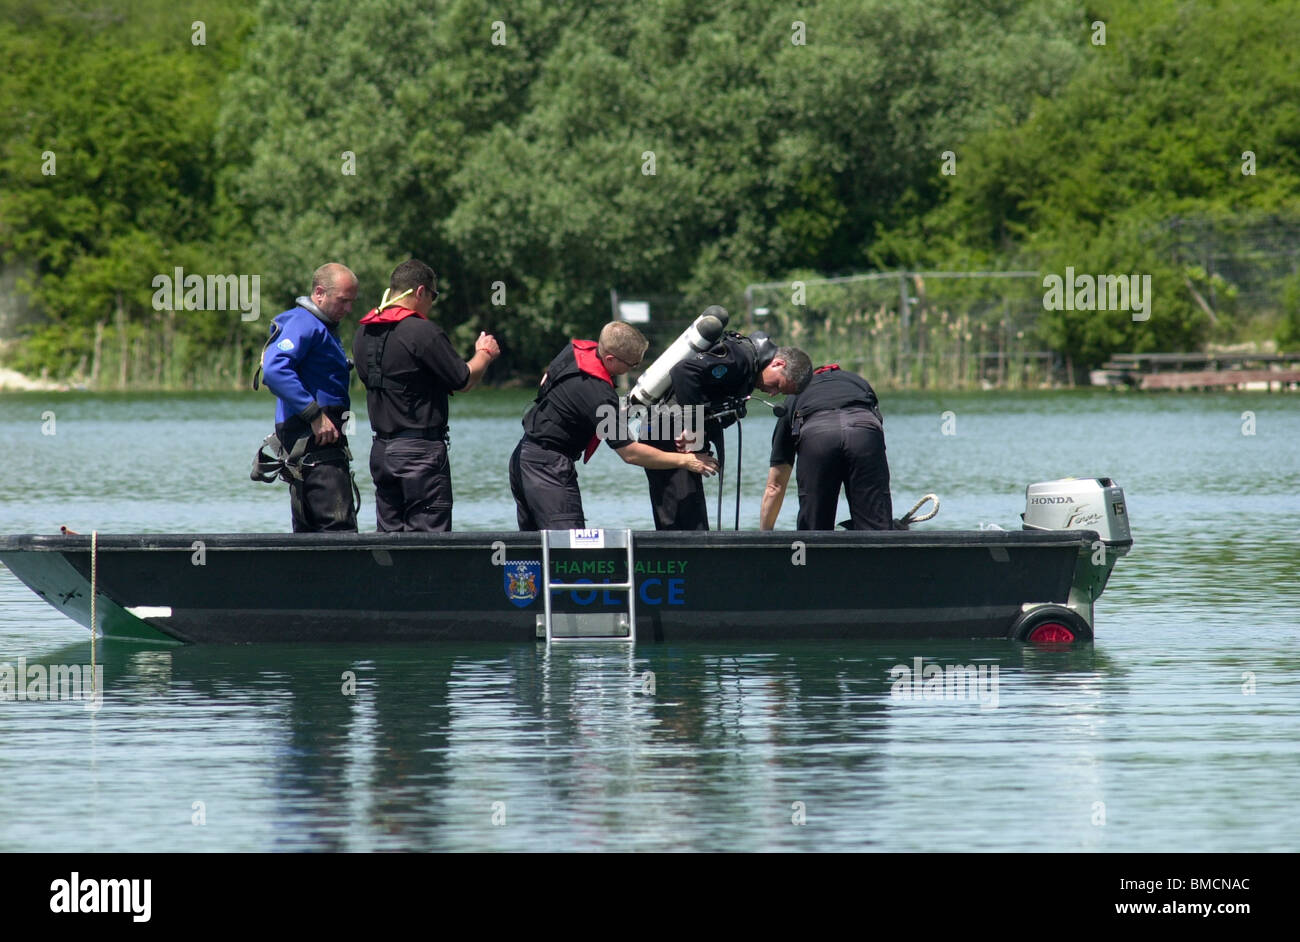 Une équipe de plongée de Thames Valley Police recherche un homme noyé au célèbre Arlesey fosses, Arlesey, Bedfordshire, England, UK Banque D'Images